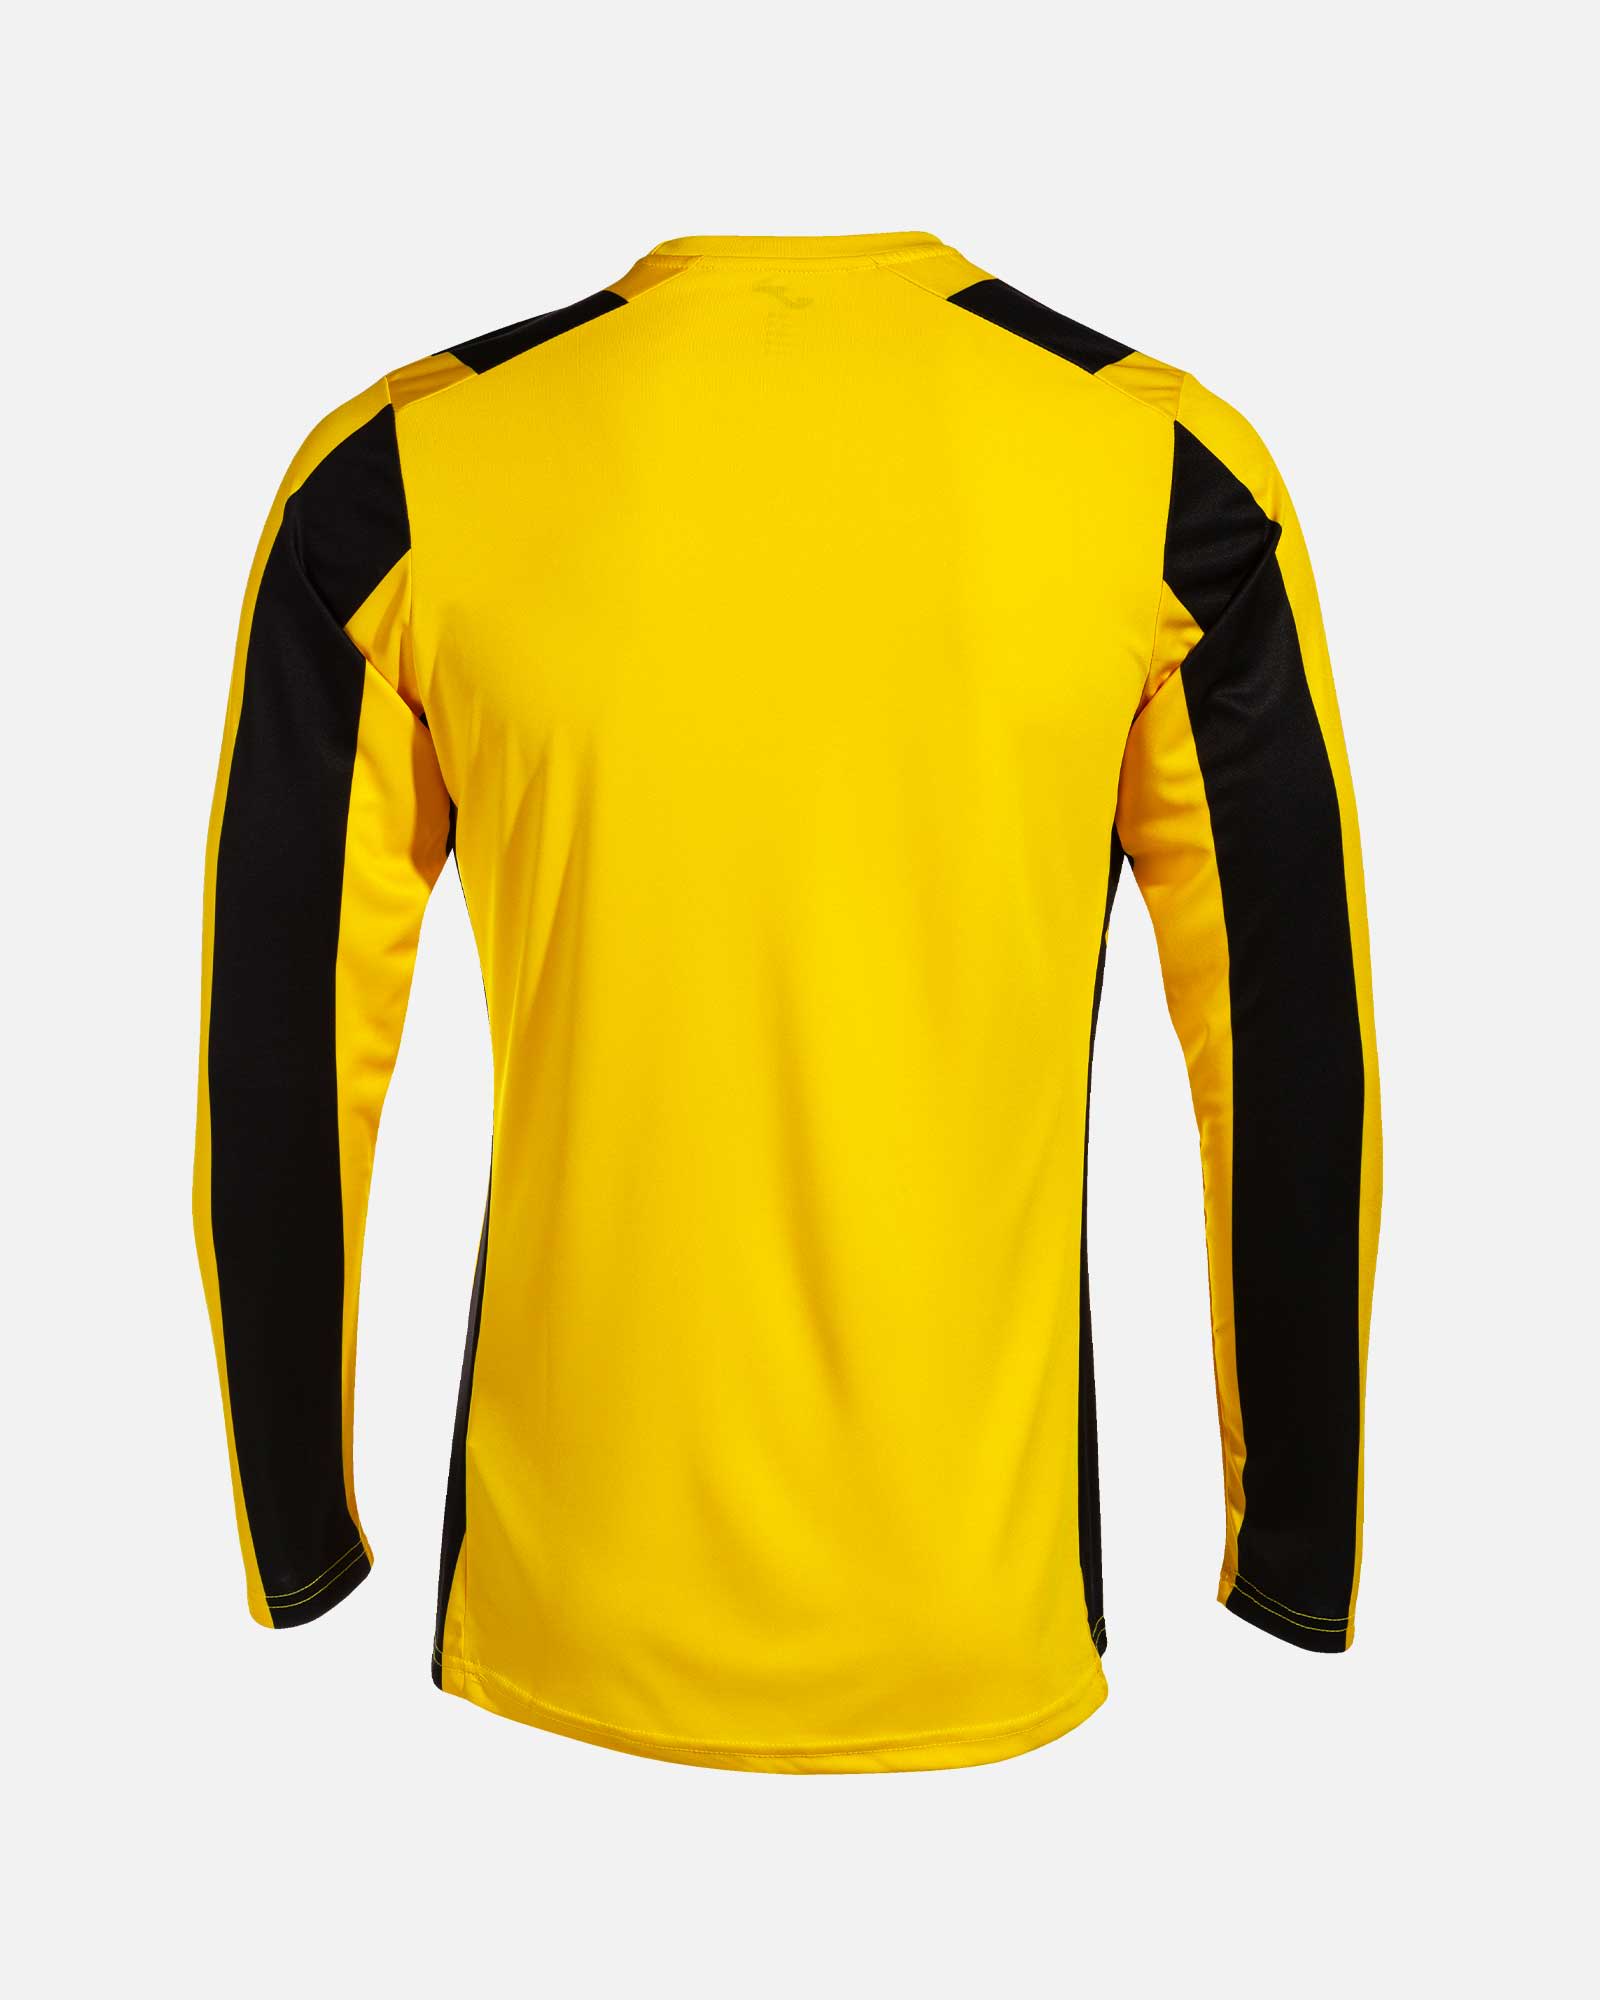 Camiseta Manga Larga Joma Inter - Amarillo/Negro - Camiseta Manga